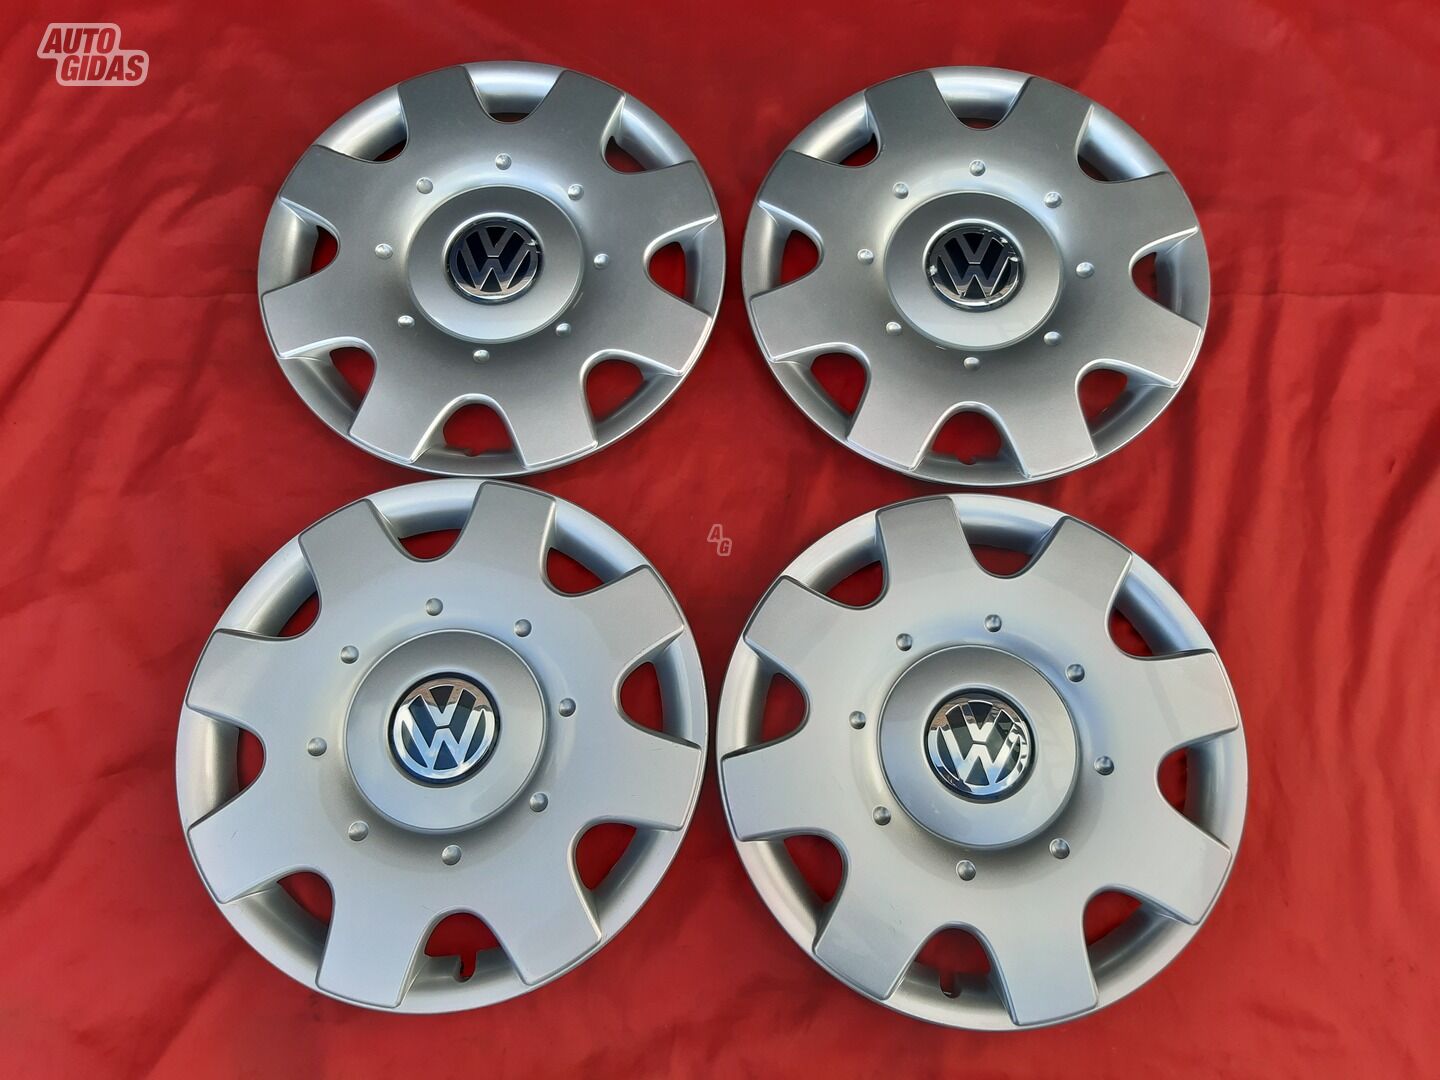 Volkswagen R16 wheel caps